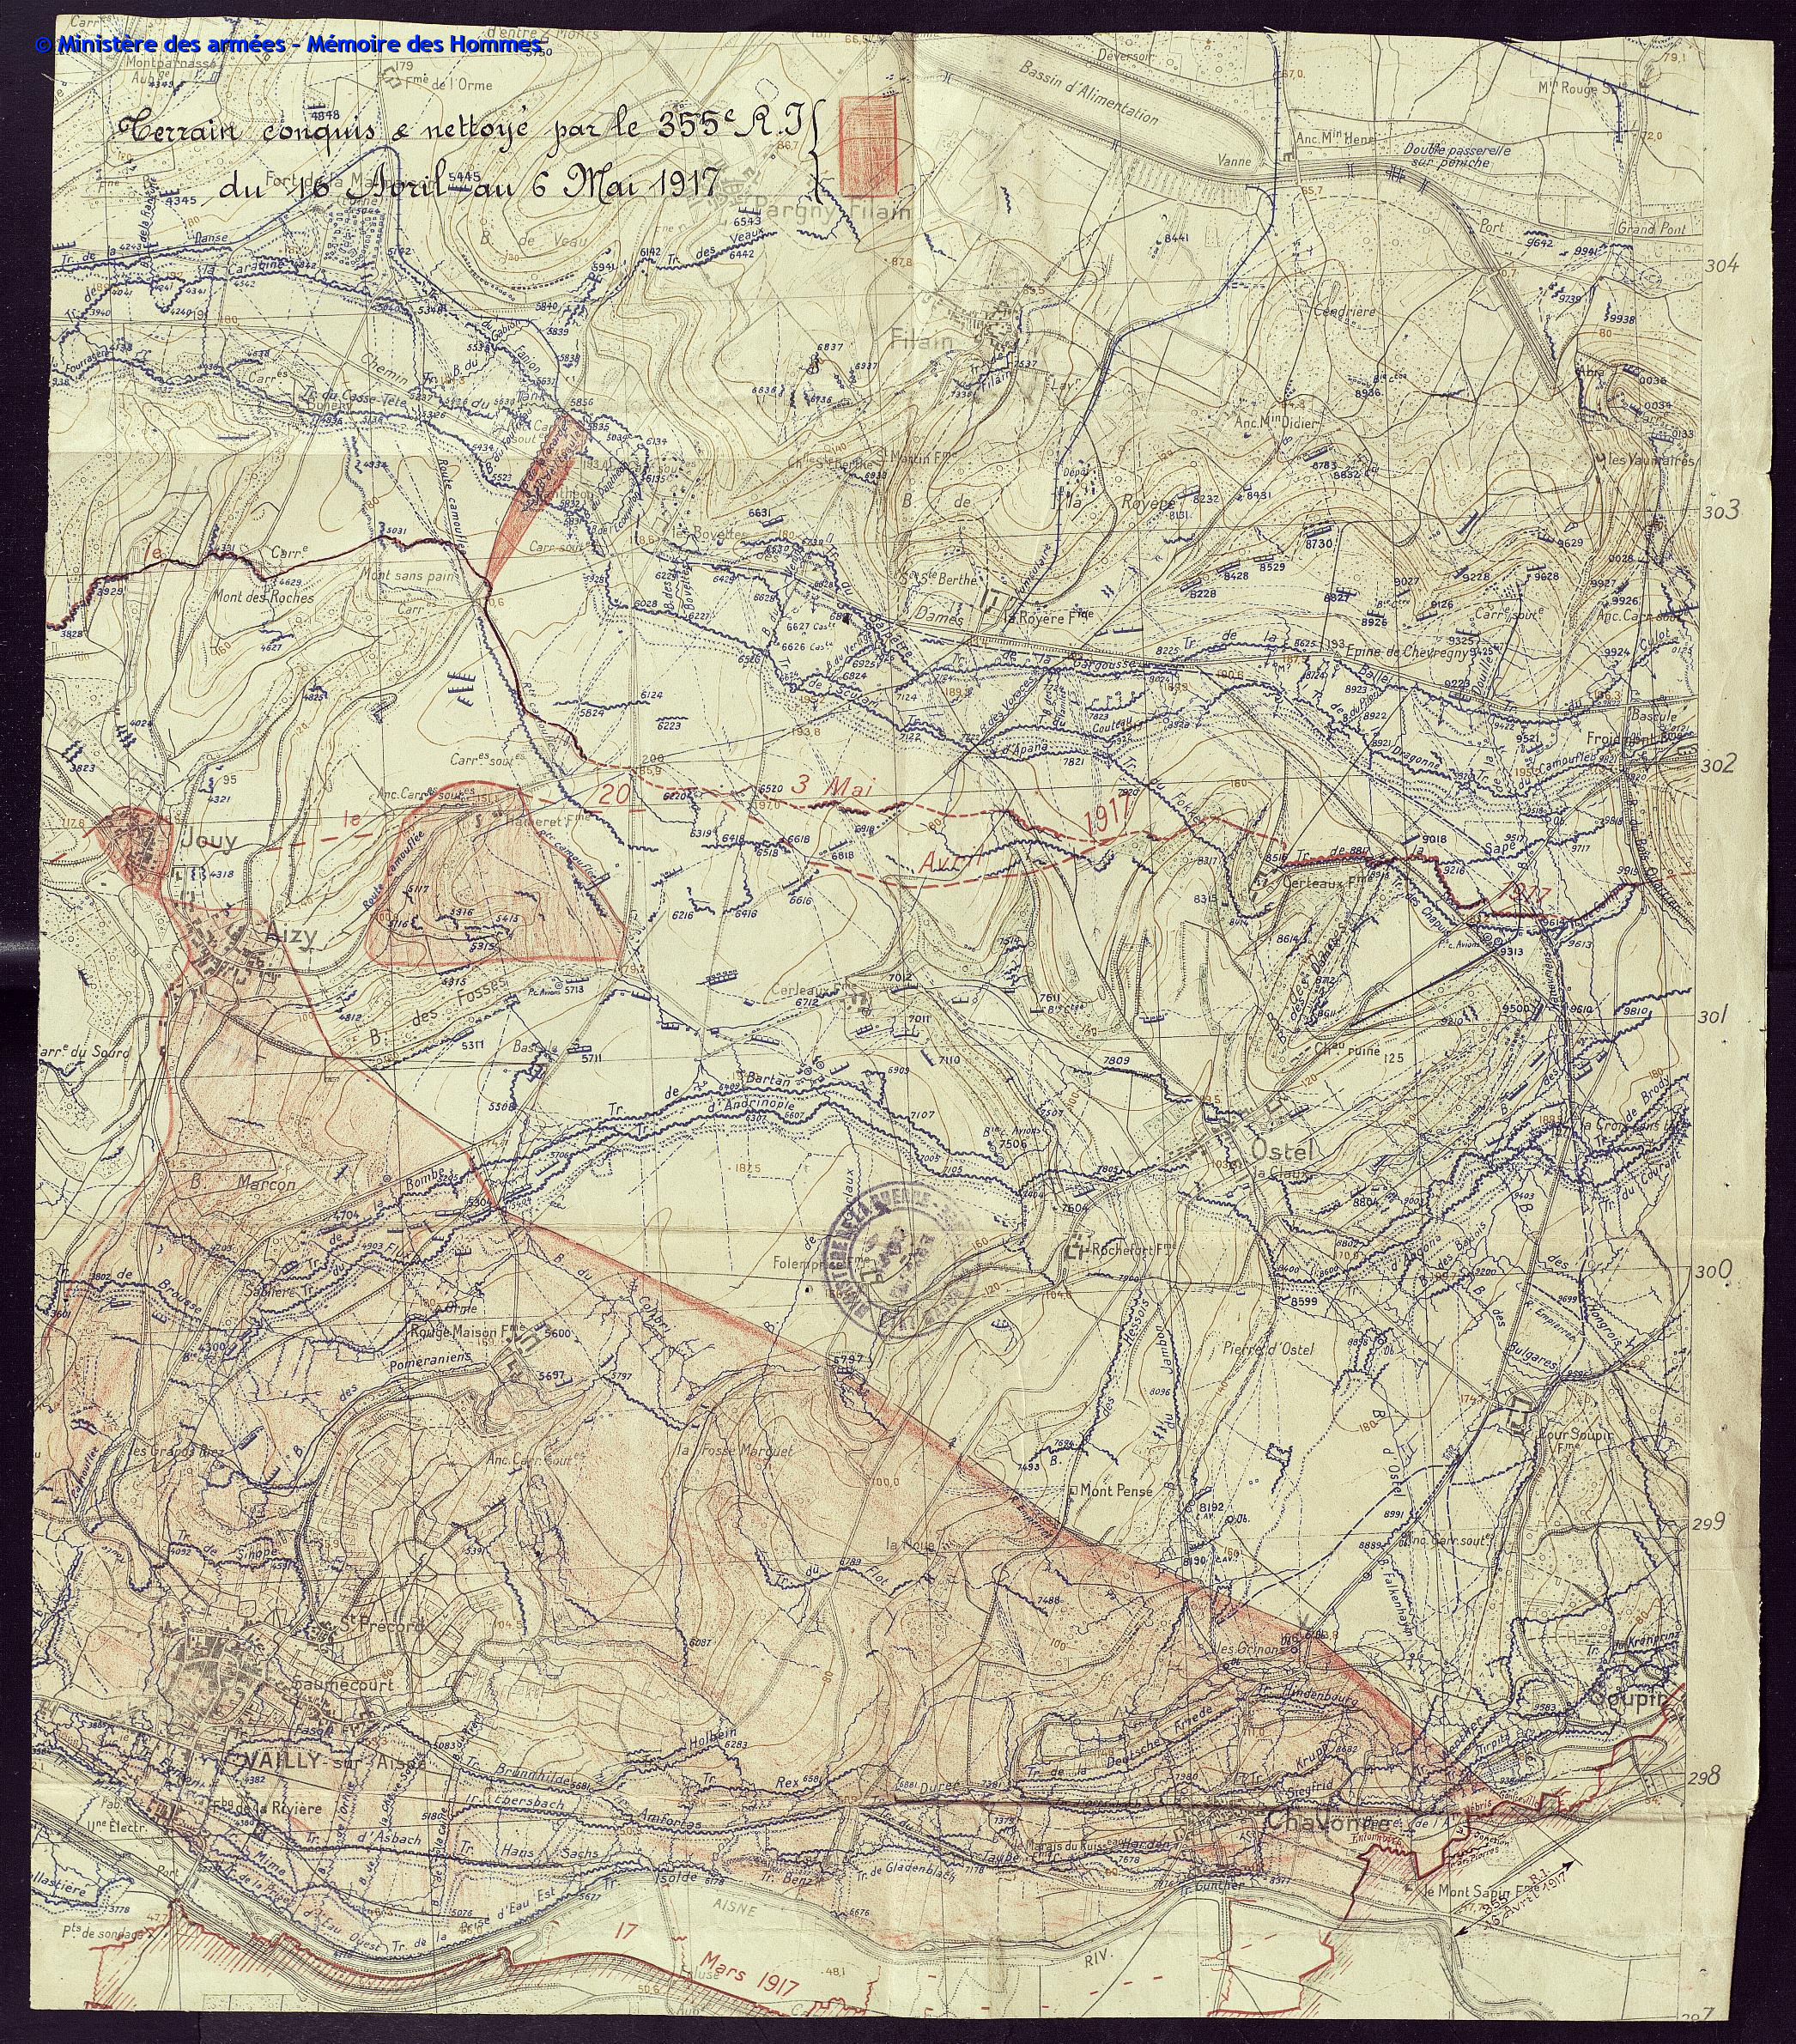 Positions du 355e régiment d'infanterie à Aizy-Jouy début mai 1917